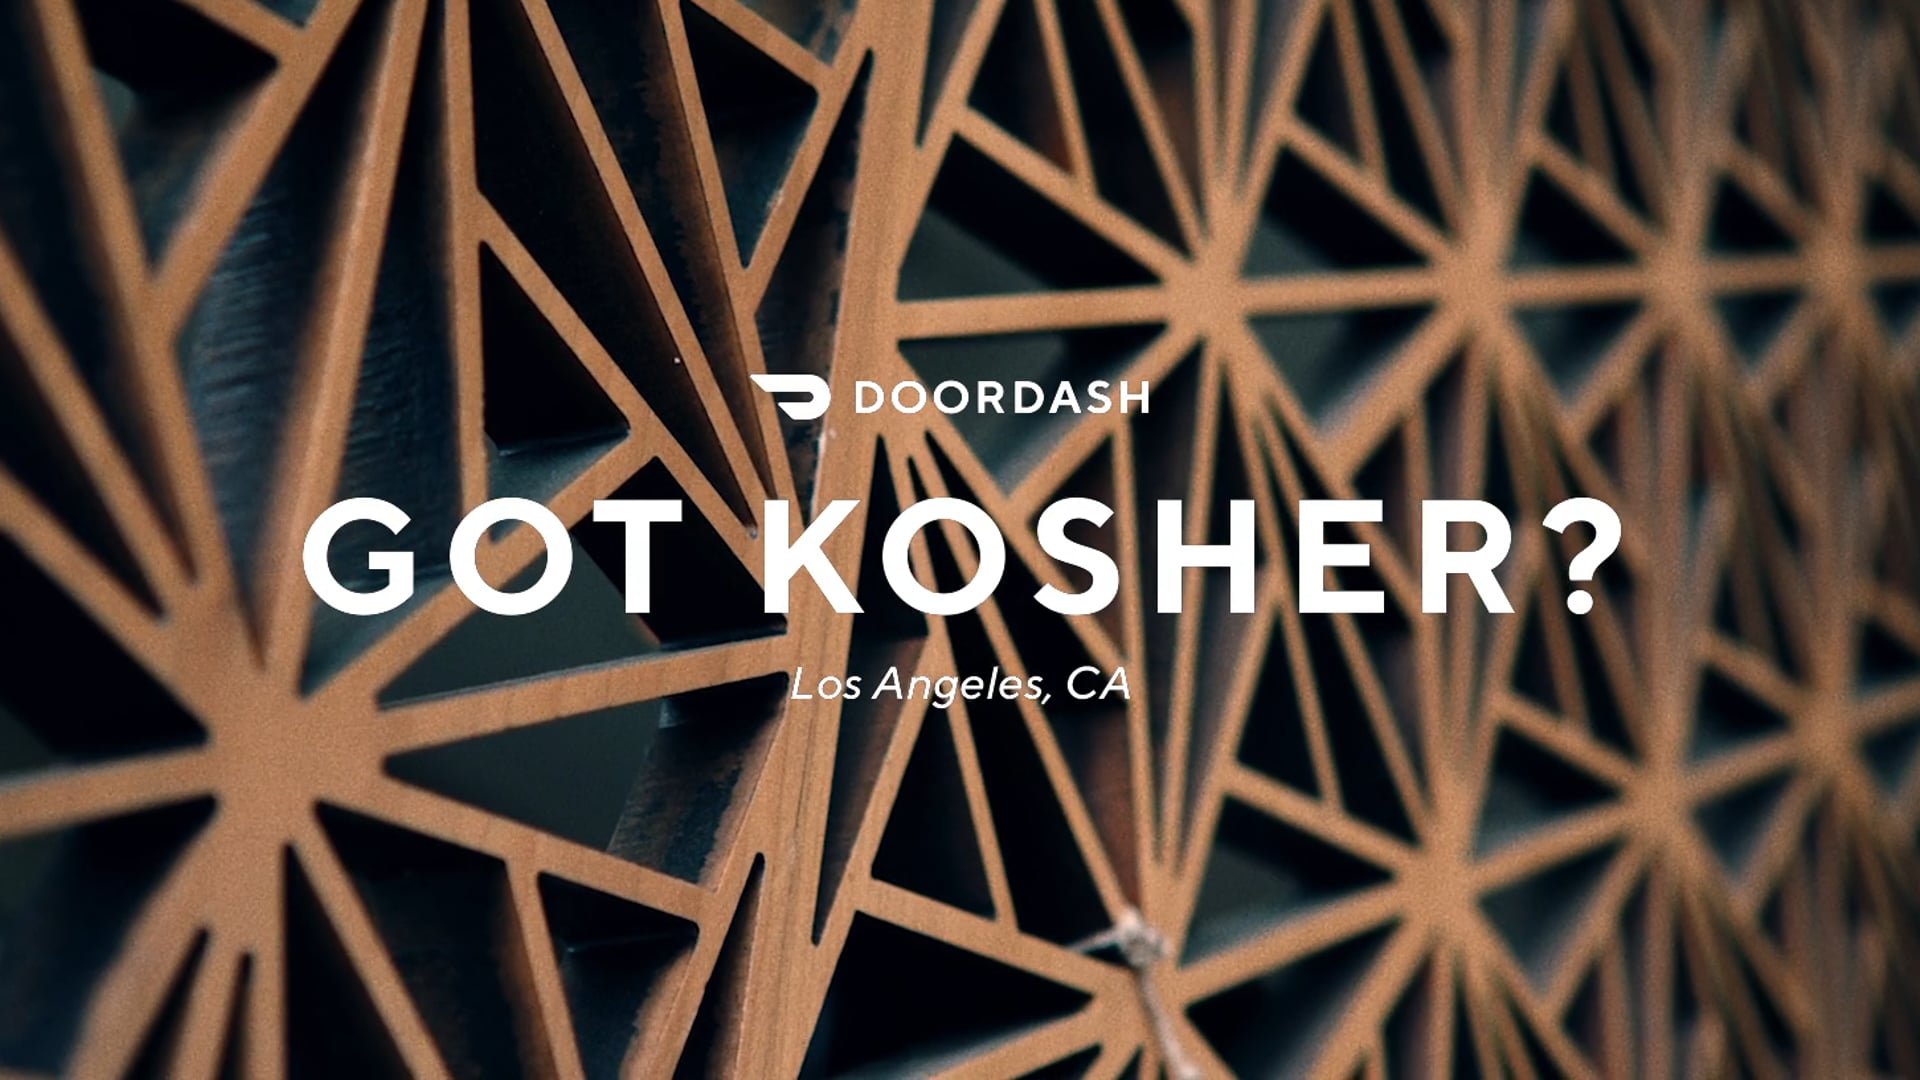 DoorDash Kitchens Without Borders | Got Kosher